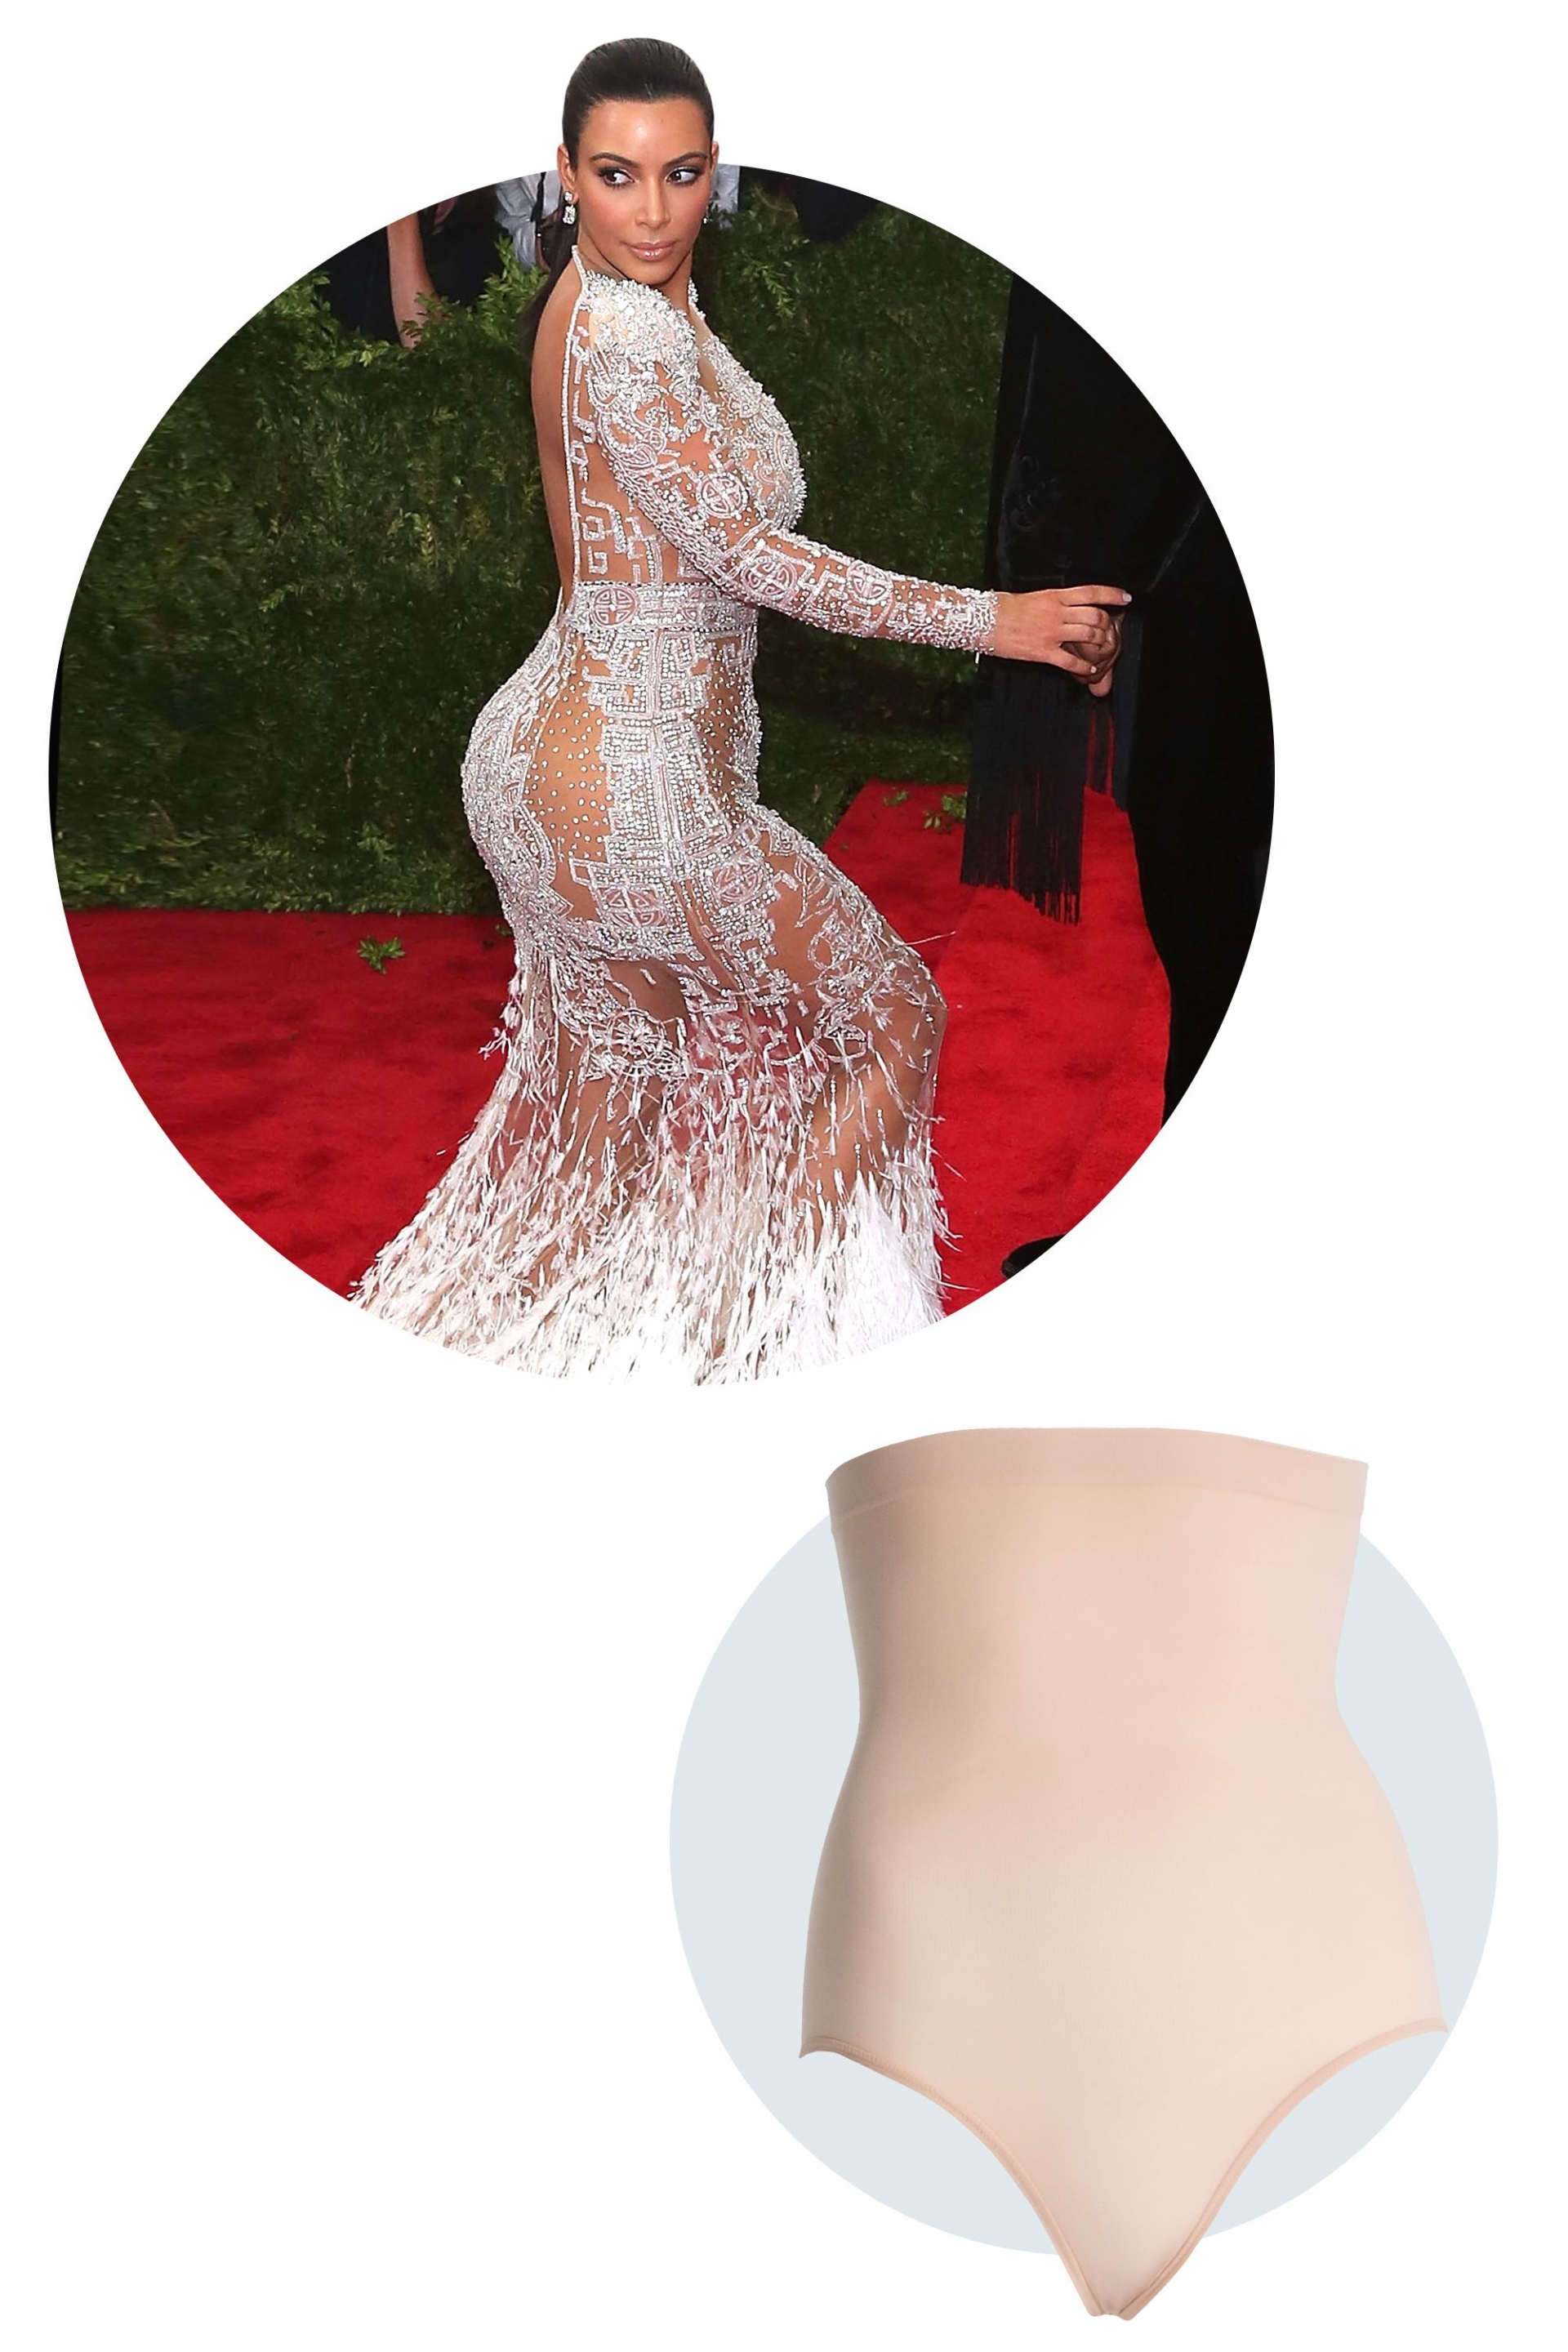 Bà mẹ 4 con, Kim Kardashian cũng lựa chọn bodysuit màu nude khi diện chiếc váy xuyên thấu trên thảm đỏ của Met Gala. Cô nàng cứ tự tin thả dáng trên thảm đó mà không sợ bản thân bị hớ hênh trong thiết kế gợi cảm.